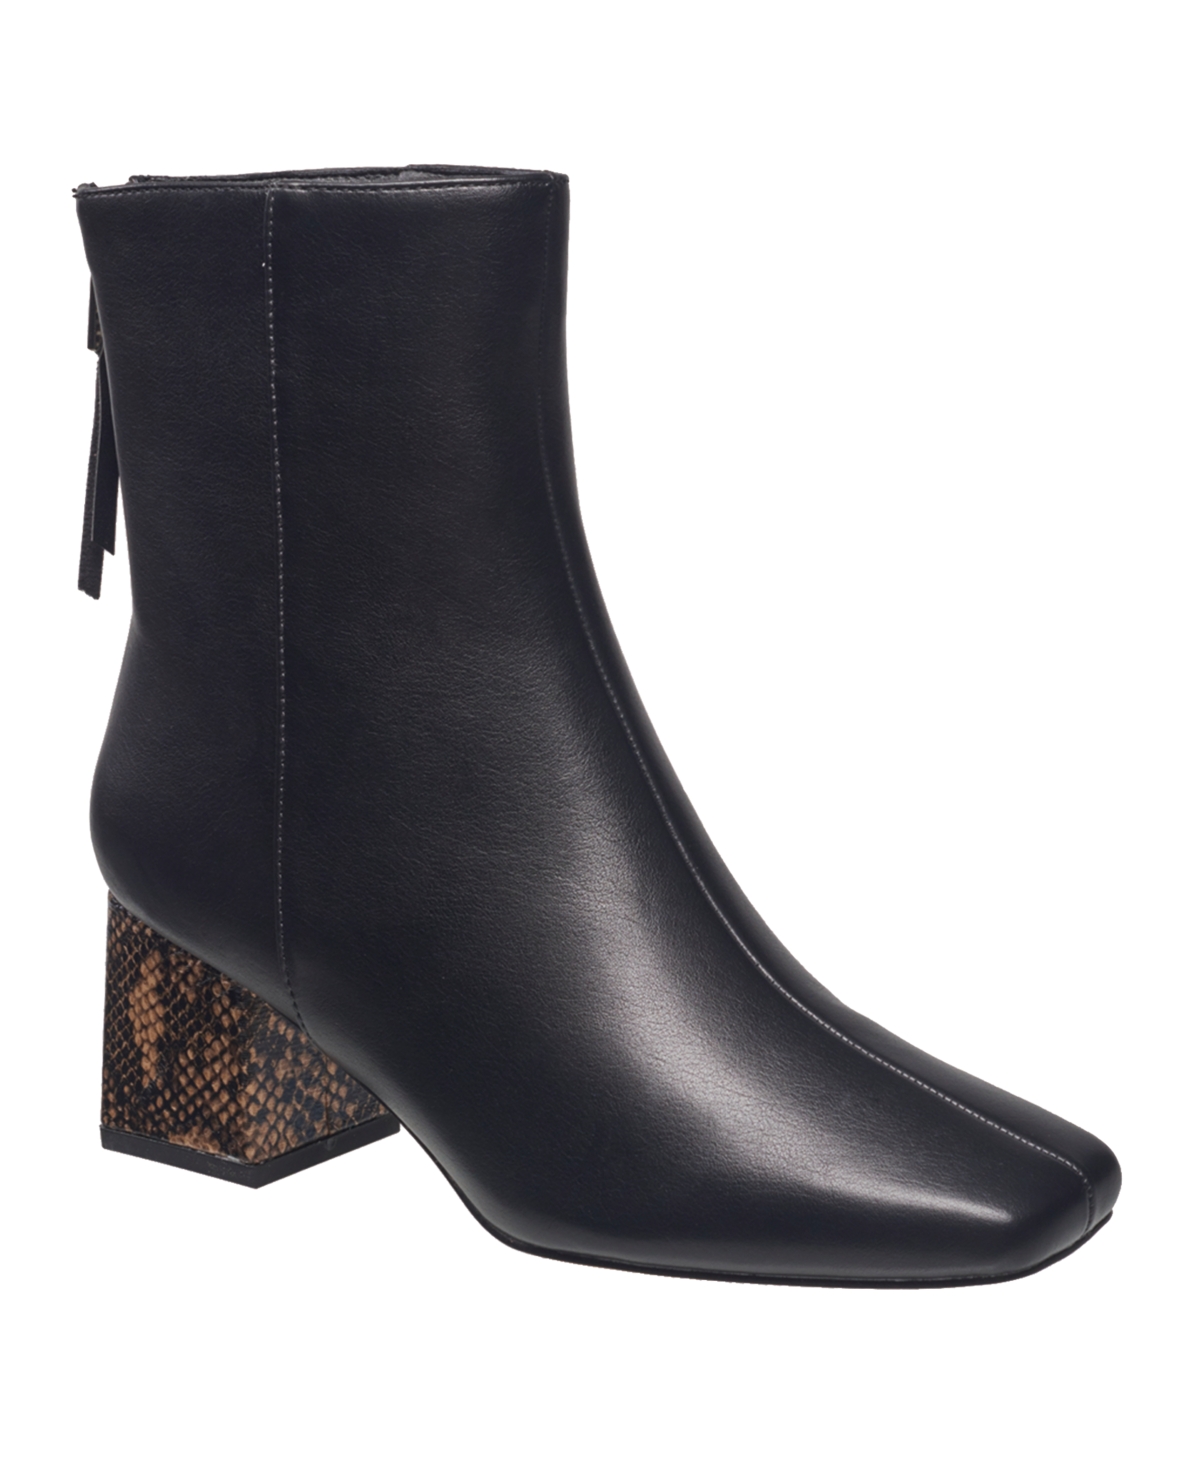 Women's Tess Side Zip Narrow Calf Boots - Black